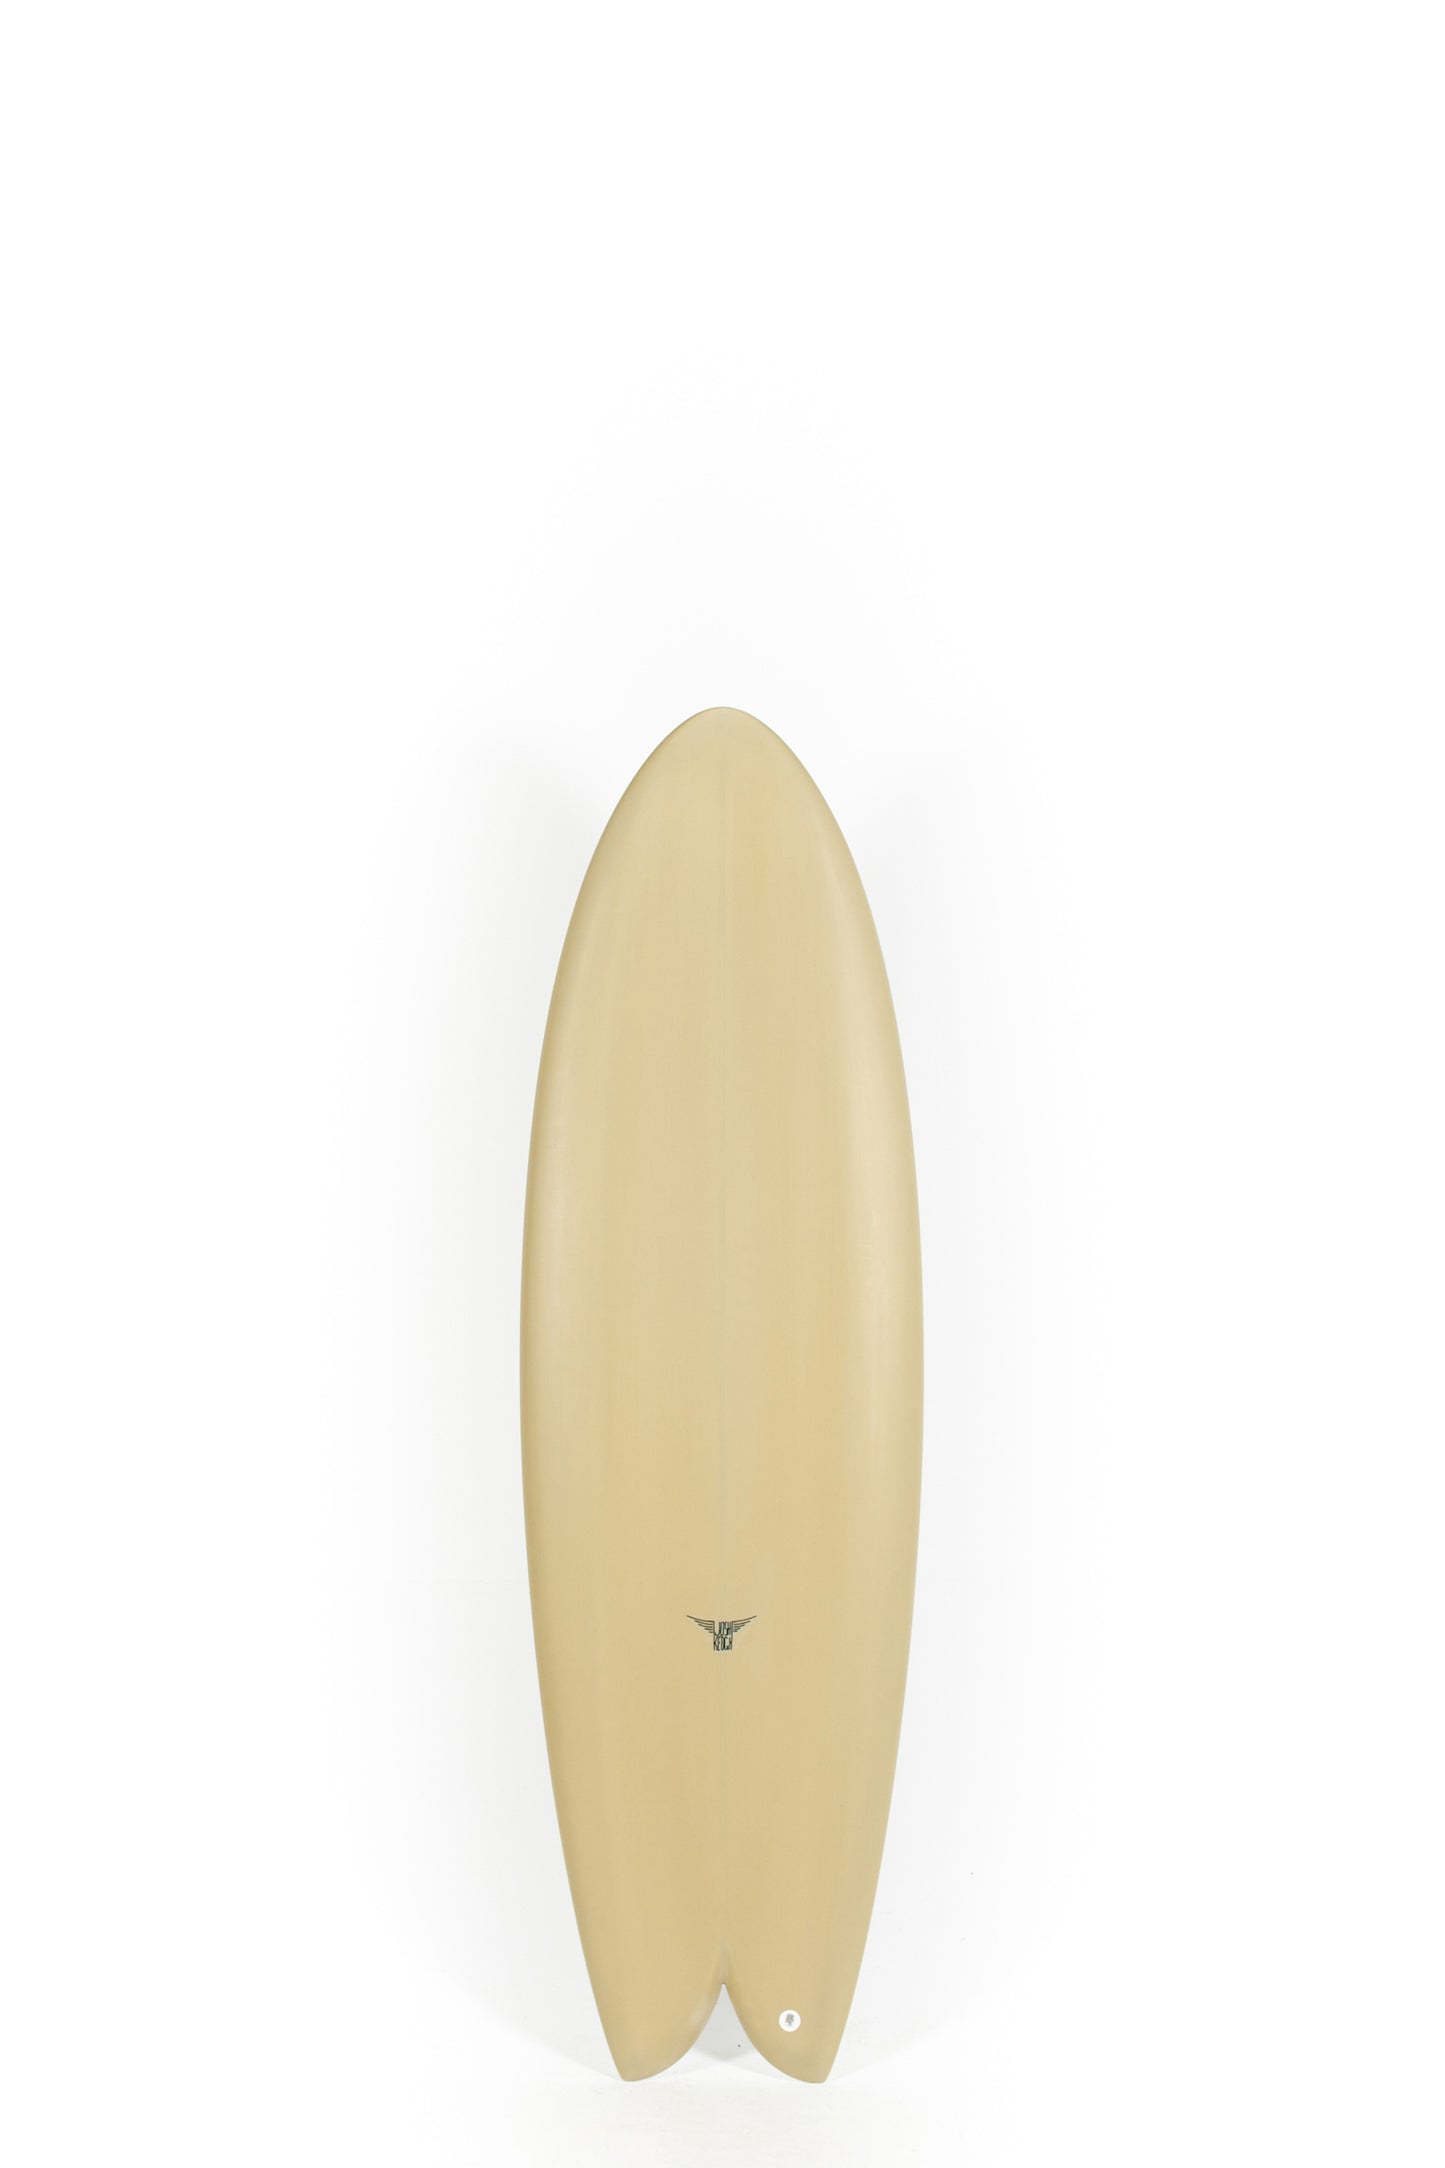 Pukas Surf Shop_Joshua Keogh Surfboard - MONAD by Joshua Keogh - 5'10" x 20 7/8 x 2 1/2 - MONAD510